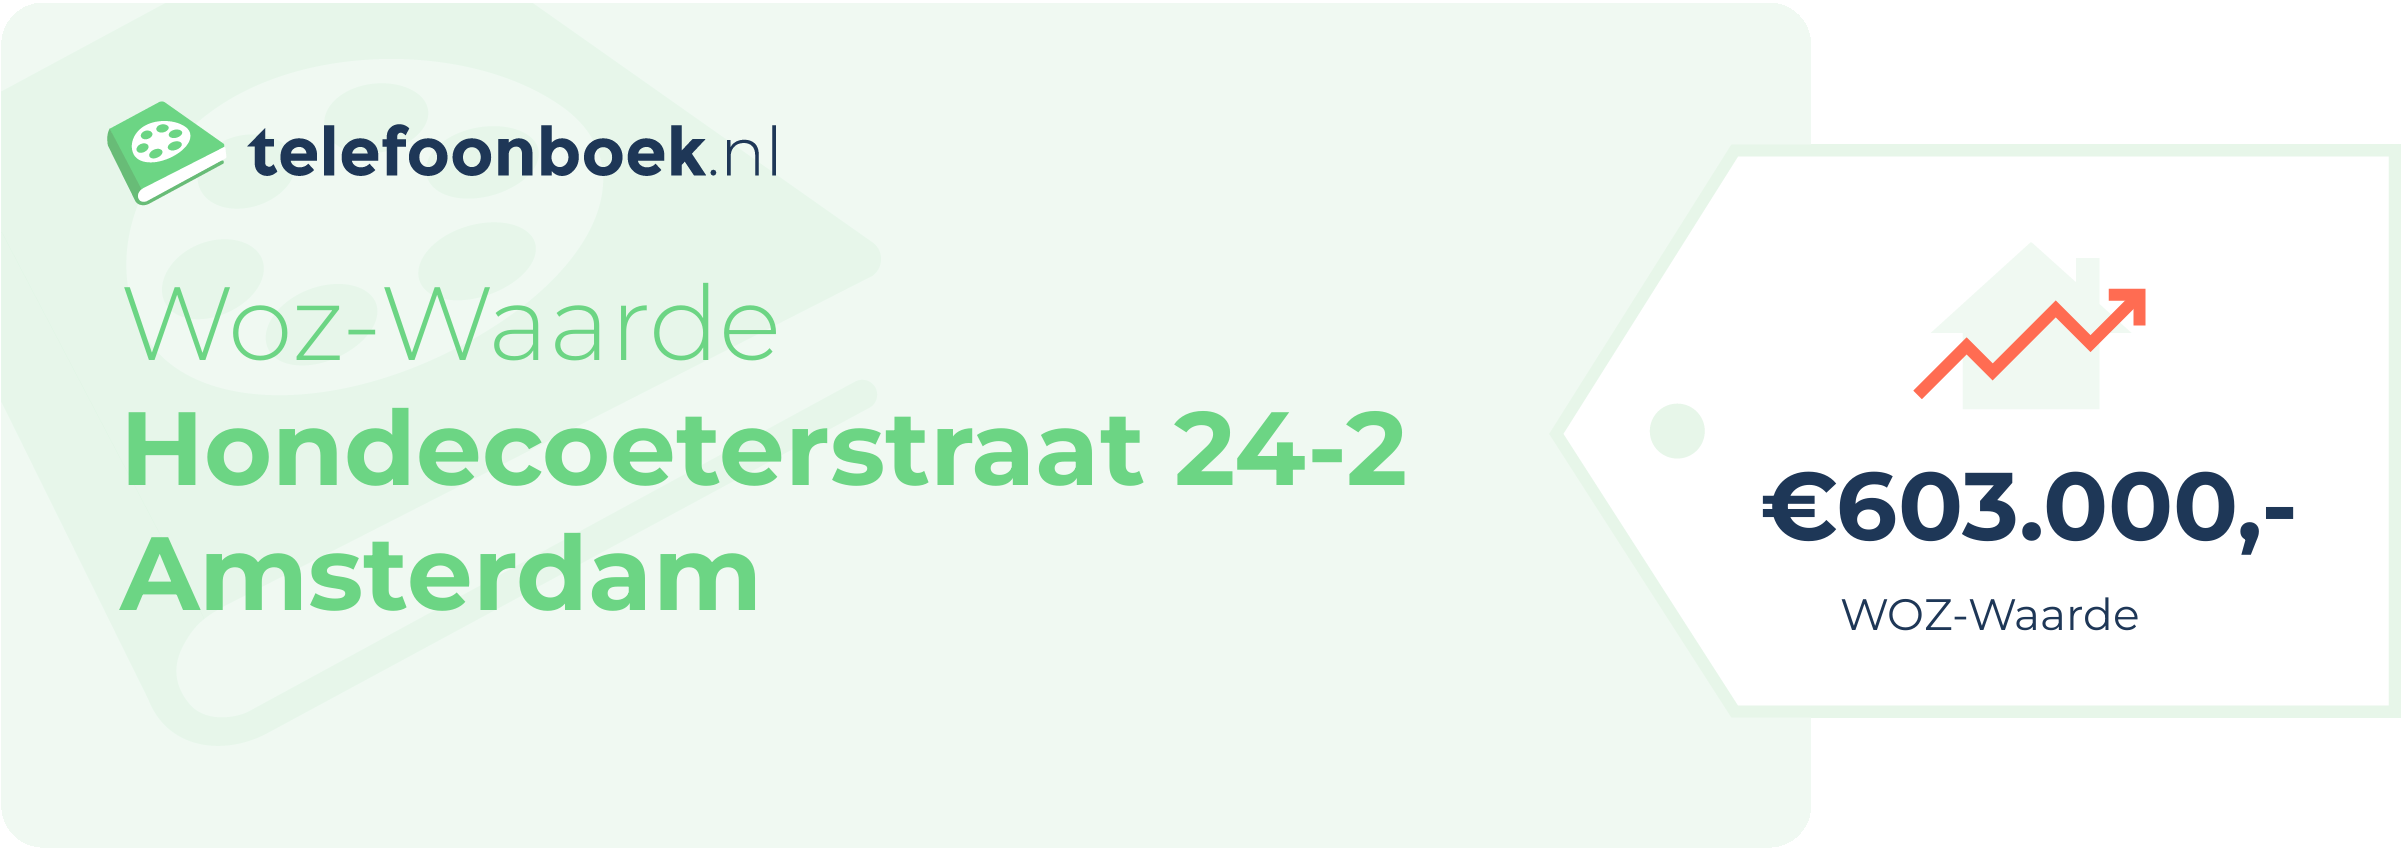 WOZ-waarde Hondecoeterstraat 24-2 Amsterdam